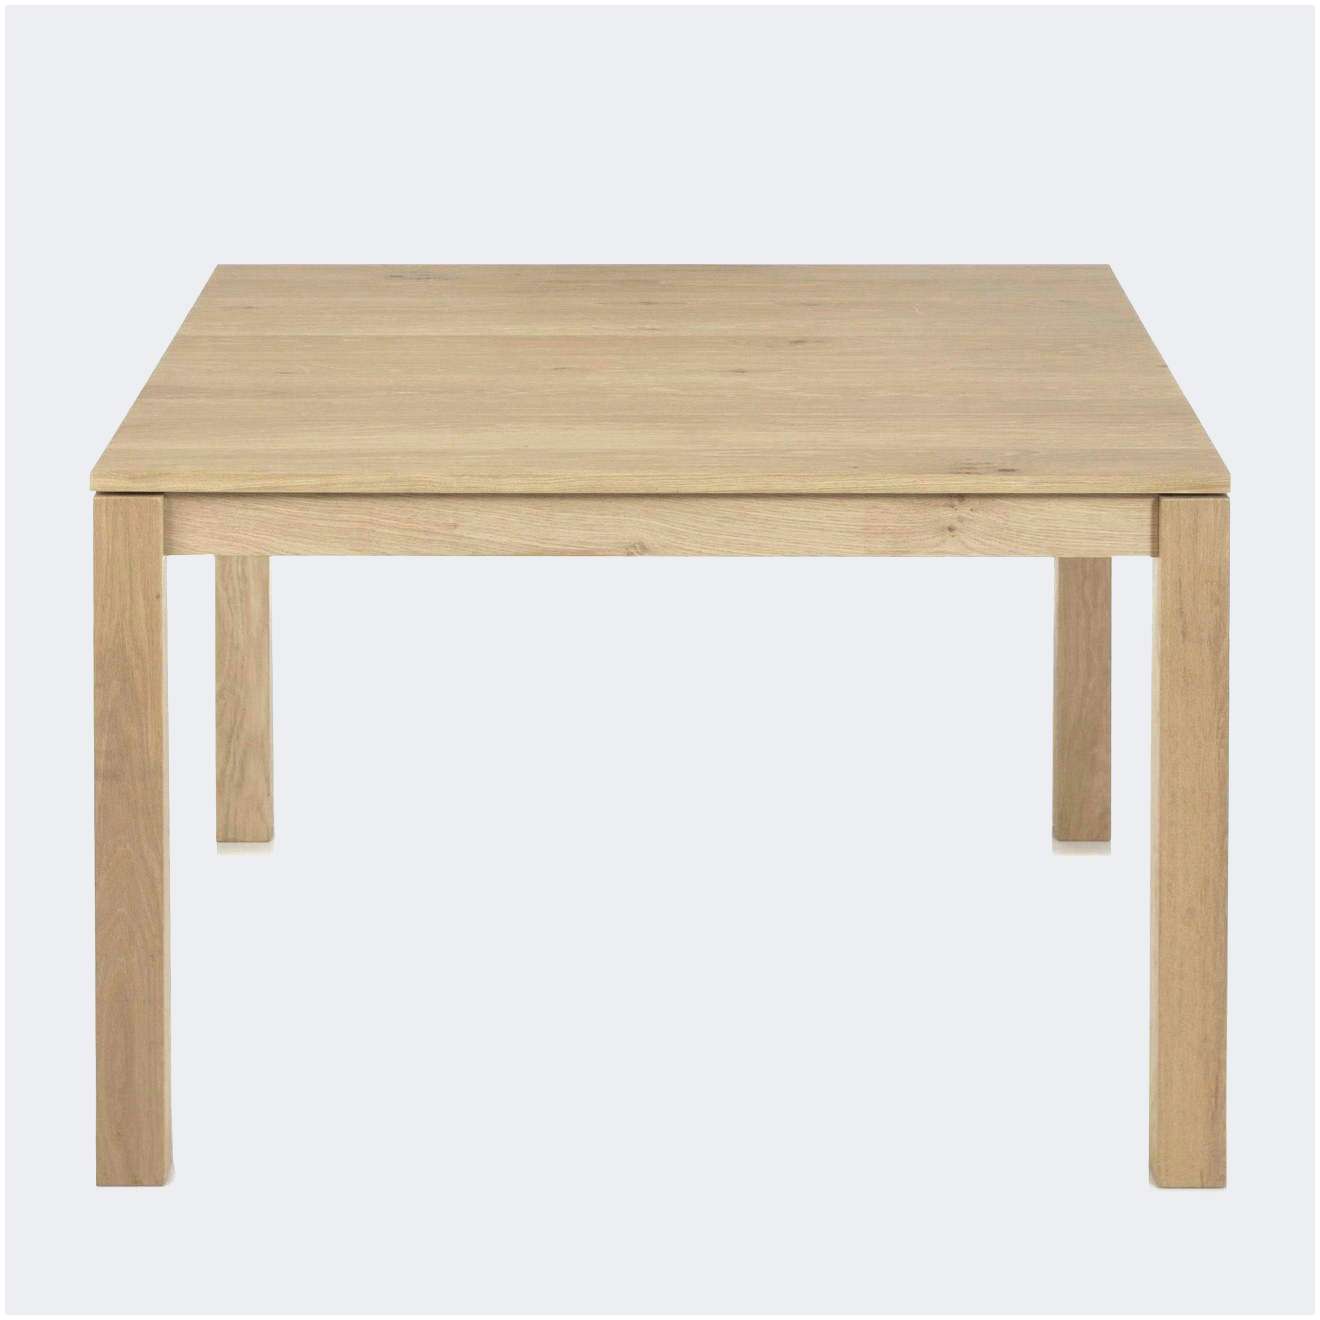 Table De Jardin Pliante Frais Table Et Chaise Pliante Table Et Chaise Pliante with Table